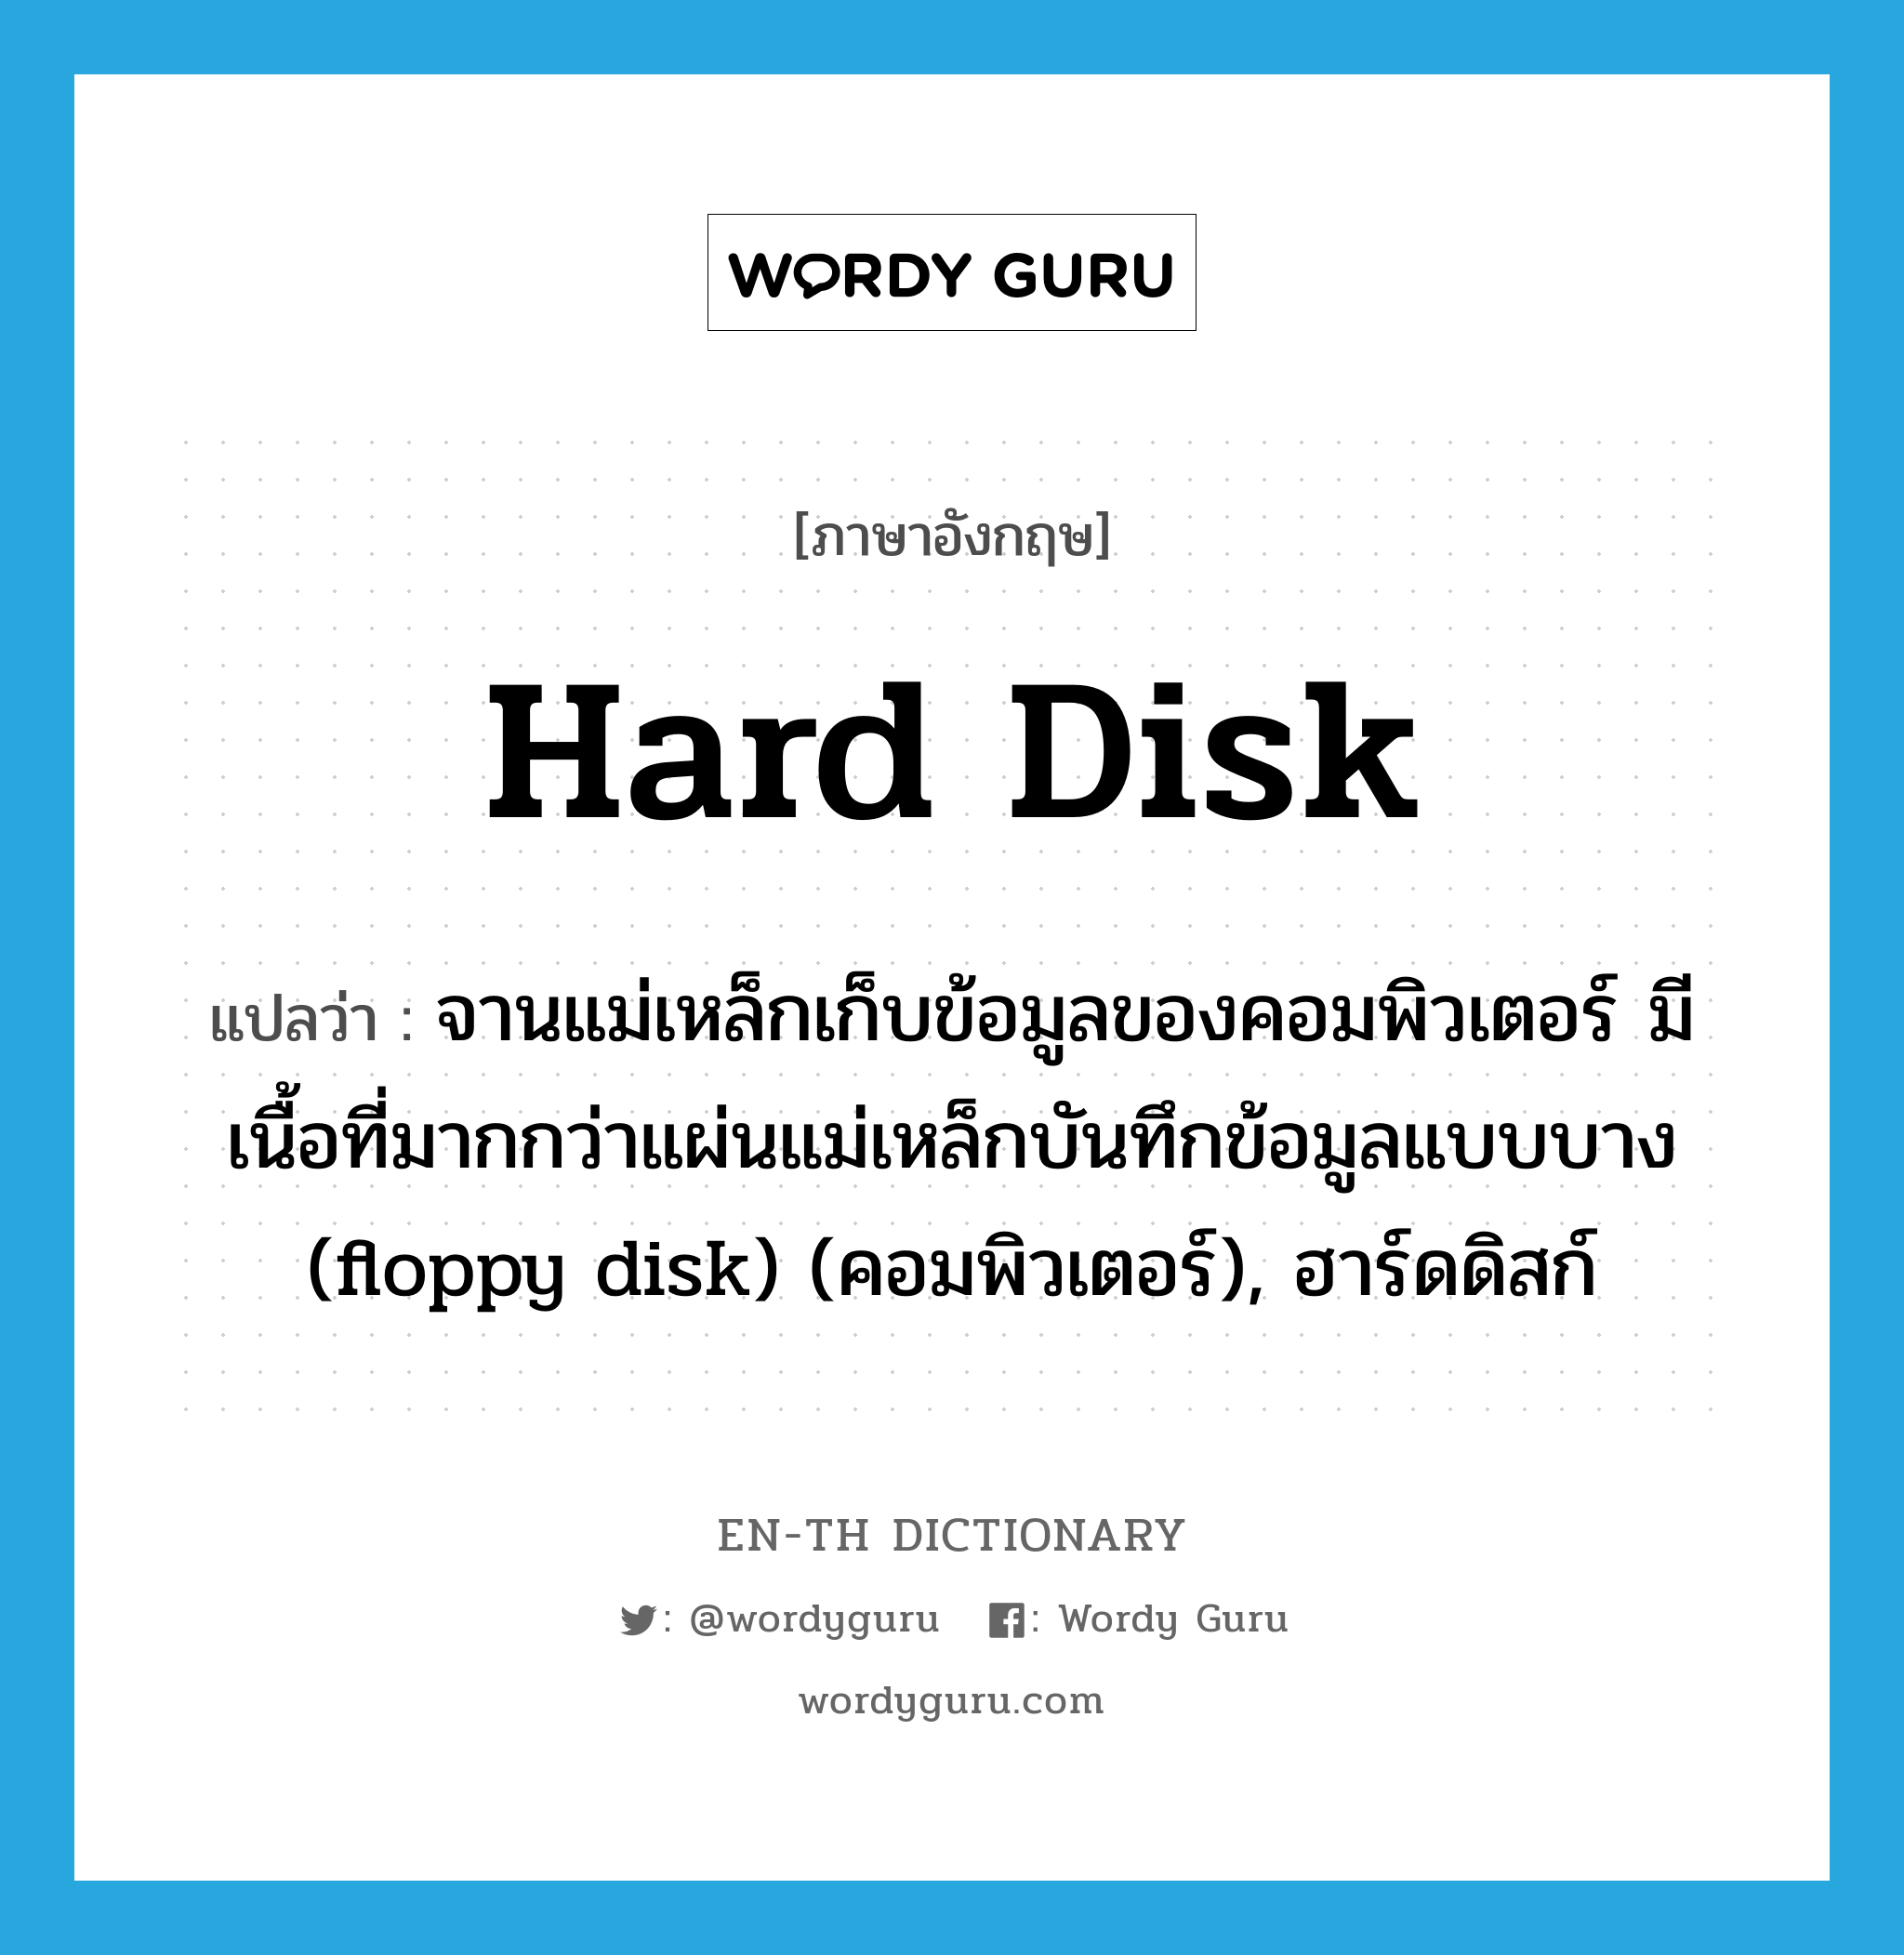 hard disk แปลว่า?, คำศัพท์ภาษาอังกฤษ hard disk แปลว่า จานแม่เหล็กเก็บข้อมูลของคอมพิวเตอร์ มีเนื้อที่มากกว่าแผ่นแม่เหล็กบันทึกข้อมูลแบบบาง (floppy disk) (คอมพิวเตอร์), ฮาร์ดดิสก์ ประเภท N หมวด N